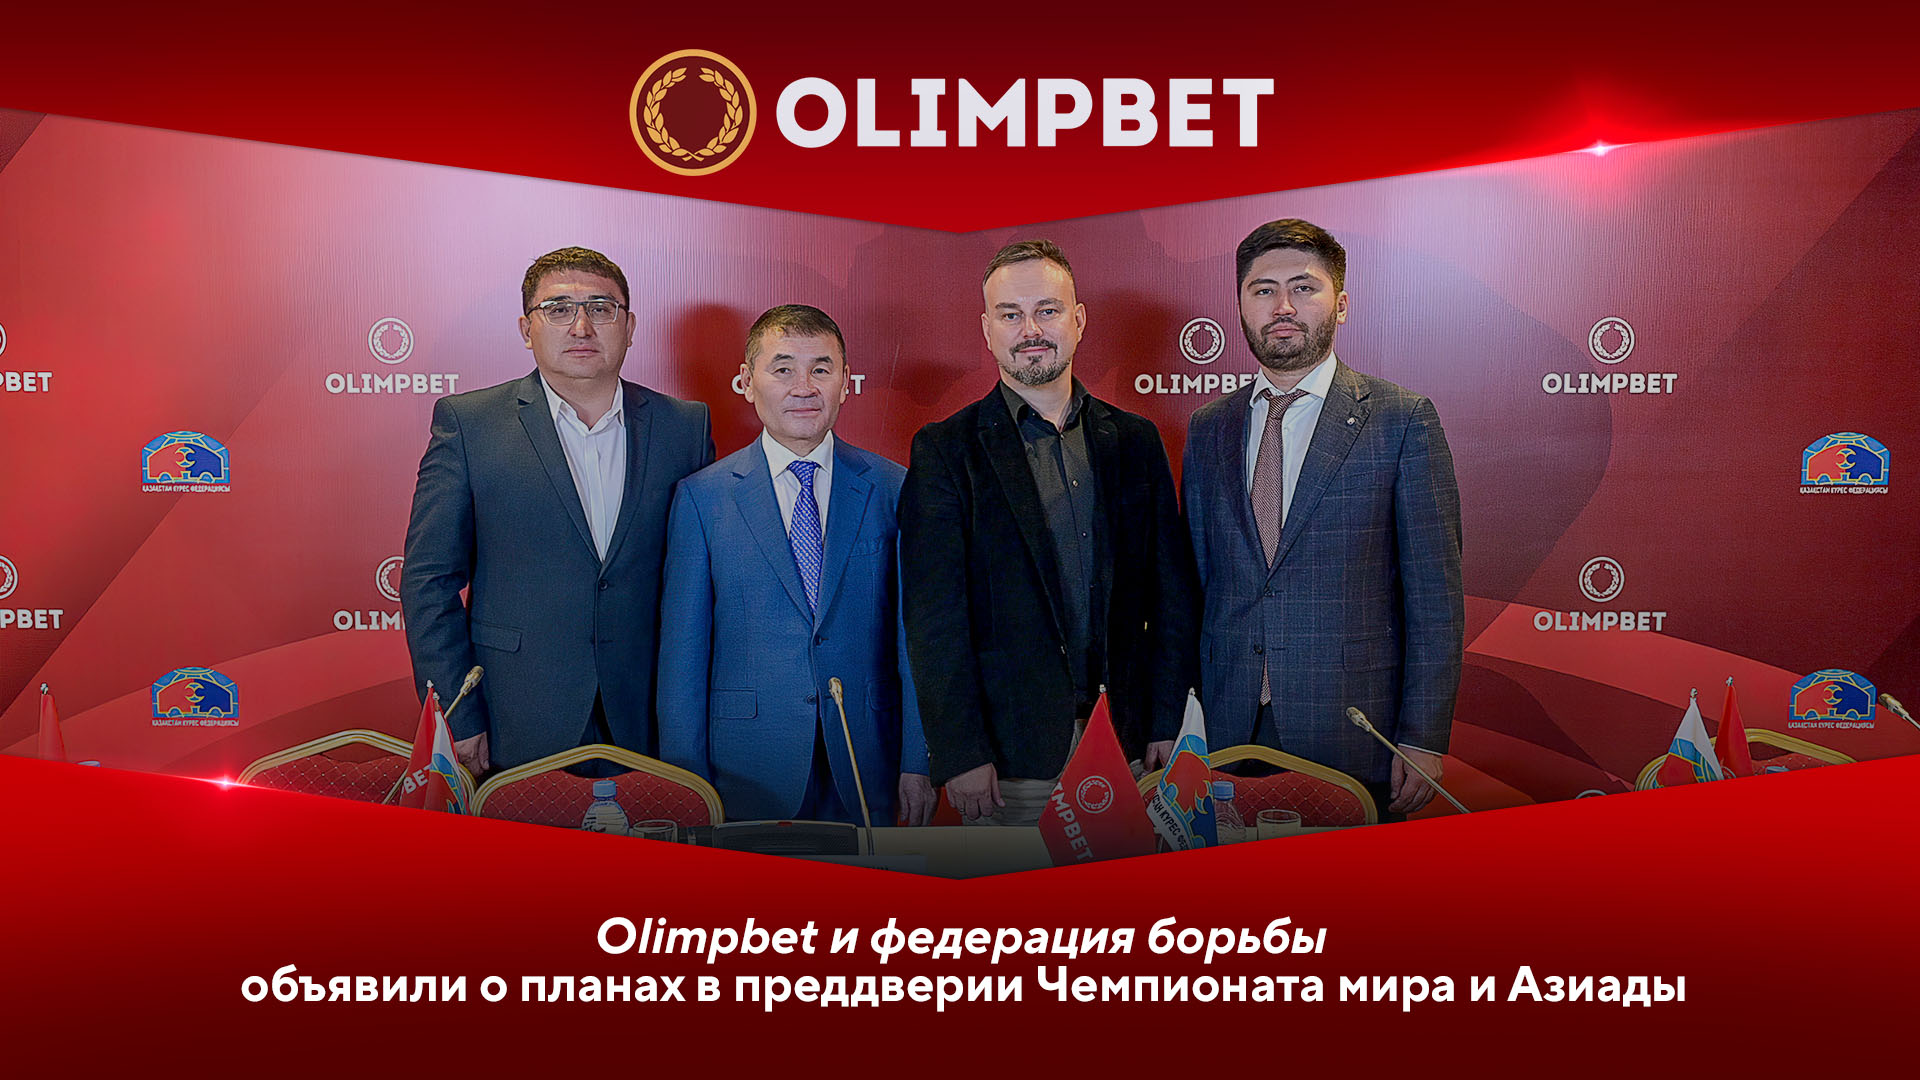 Стратегические партнеры: Olimpbet и федерация борьбы объявили о планах в преддверии ЧМ и Азиады